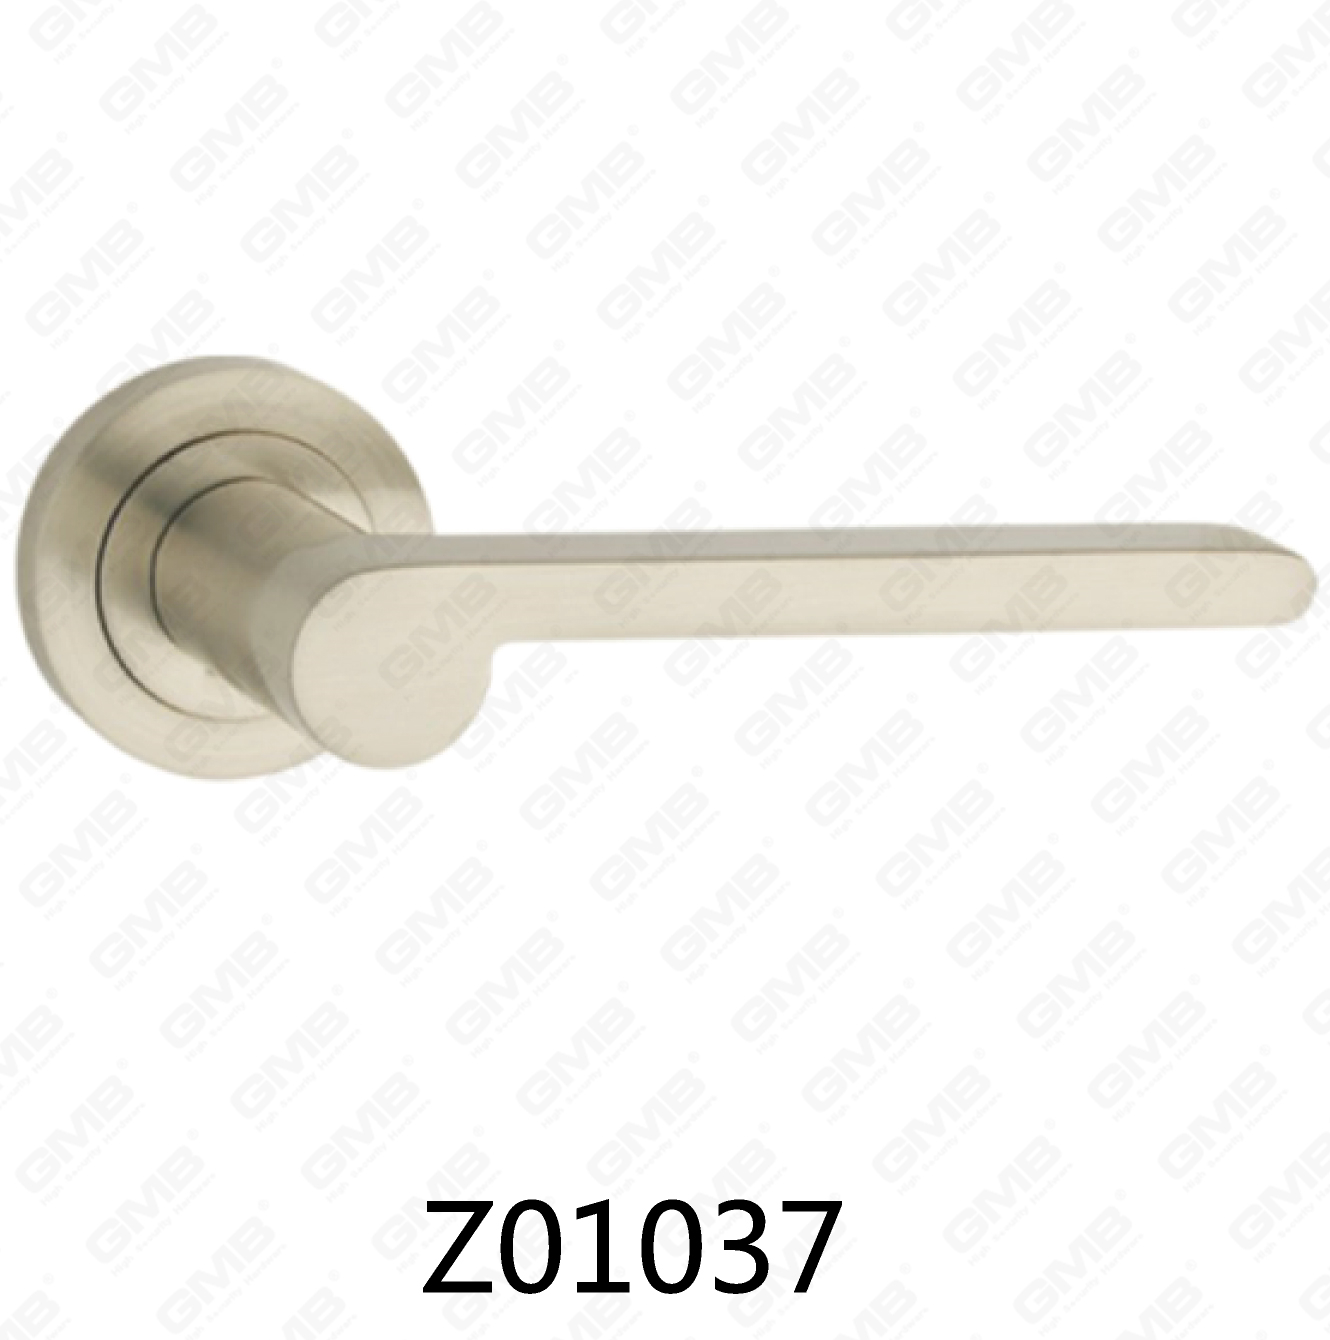 Asa de puerta de roseta de aluminio de aleación de zinc Zamak con roseta redonda (Z01037)